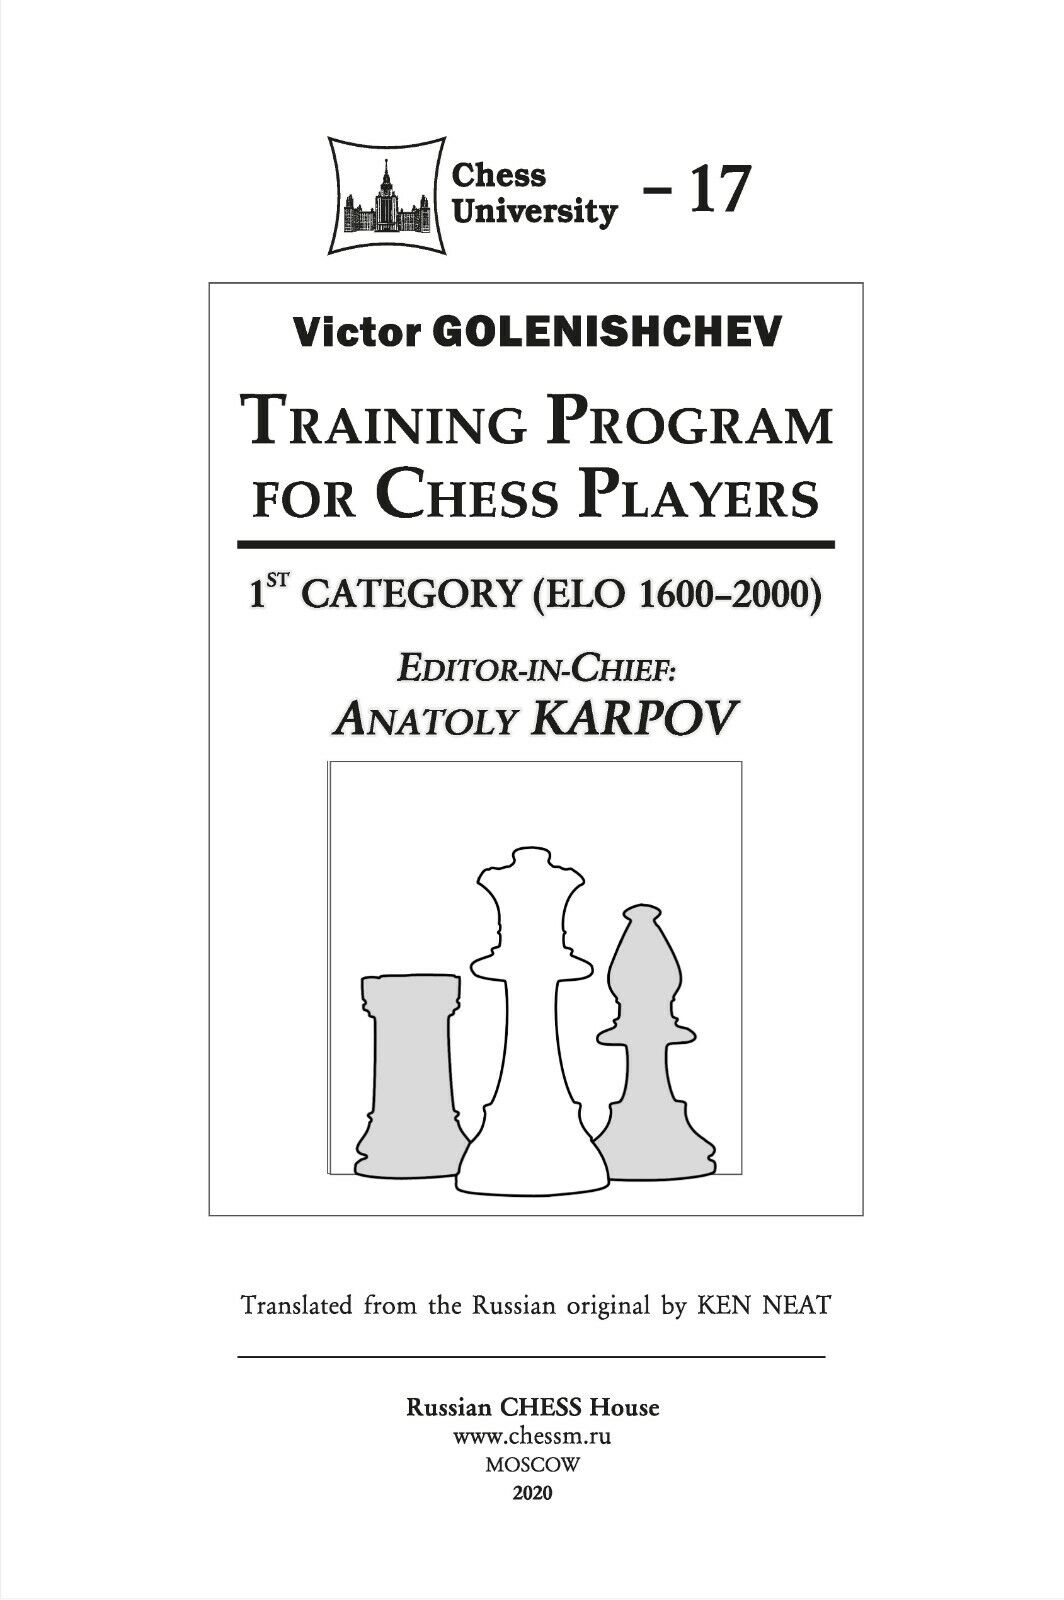 Karpov on Fischer (2/3)